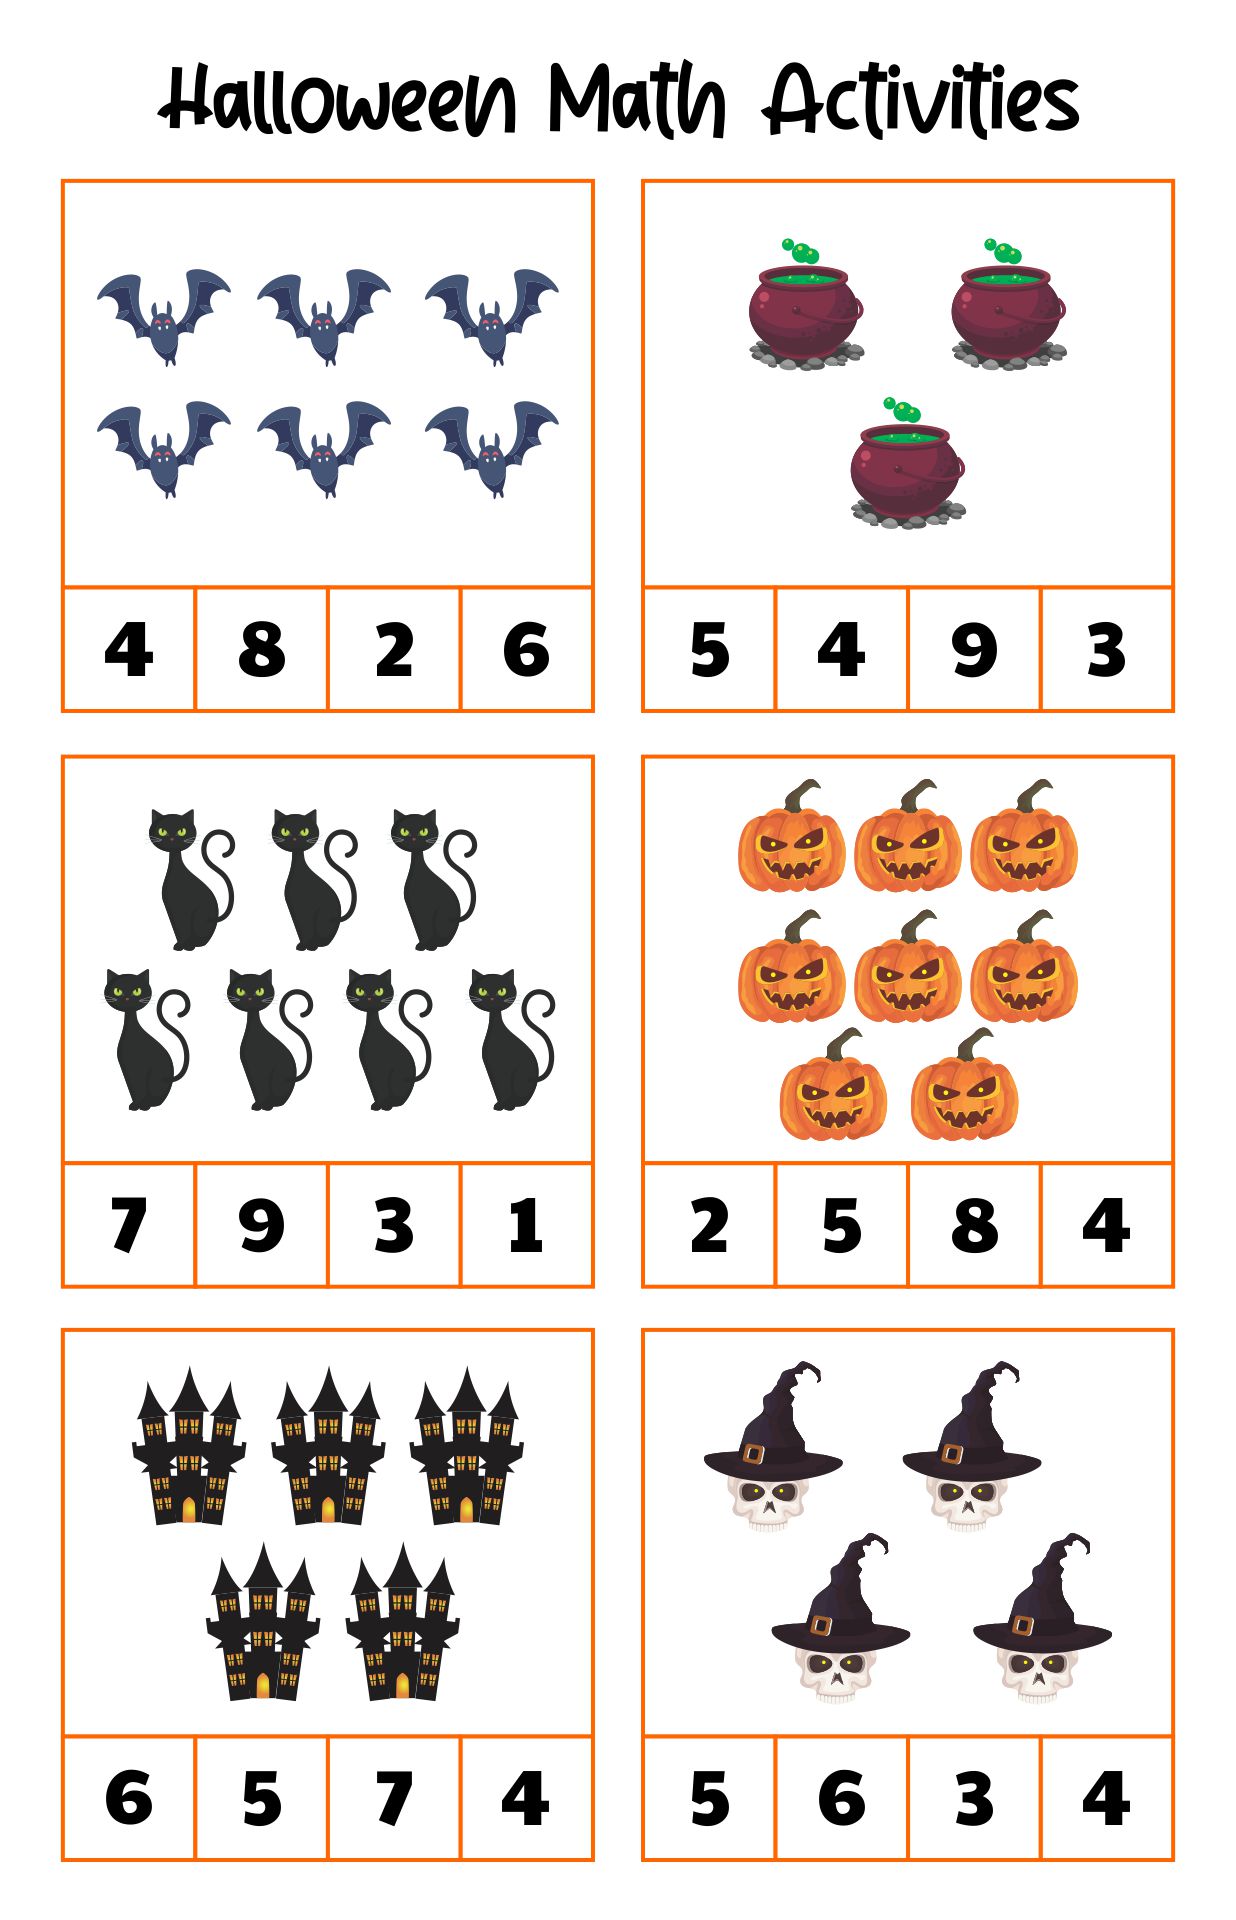 Halloween Preschool Worksheets